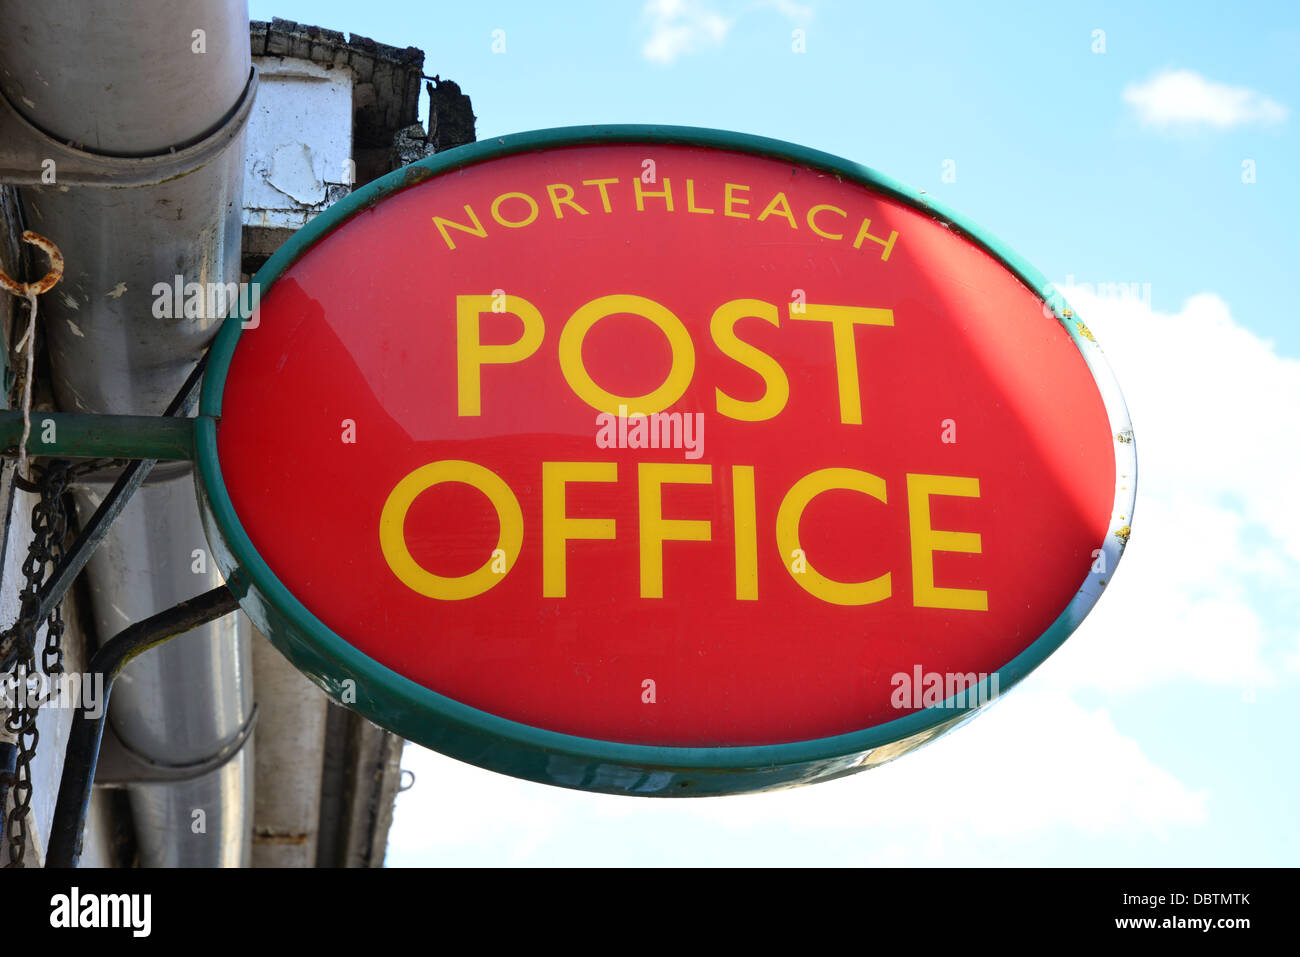 Northleach, signe du bureau de poste Place du marché, Northleach, Cotswolds, Gloucestershire, Angleterre, Royaume-Uni Banque D'Images